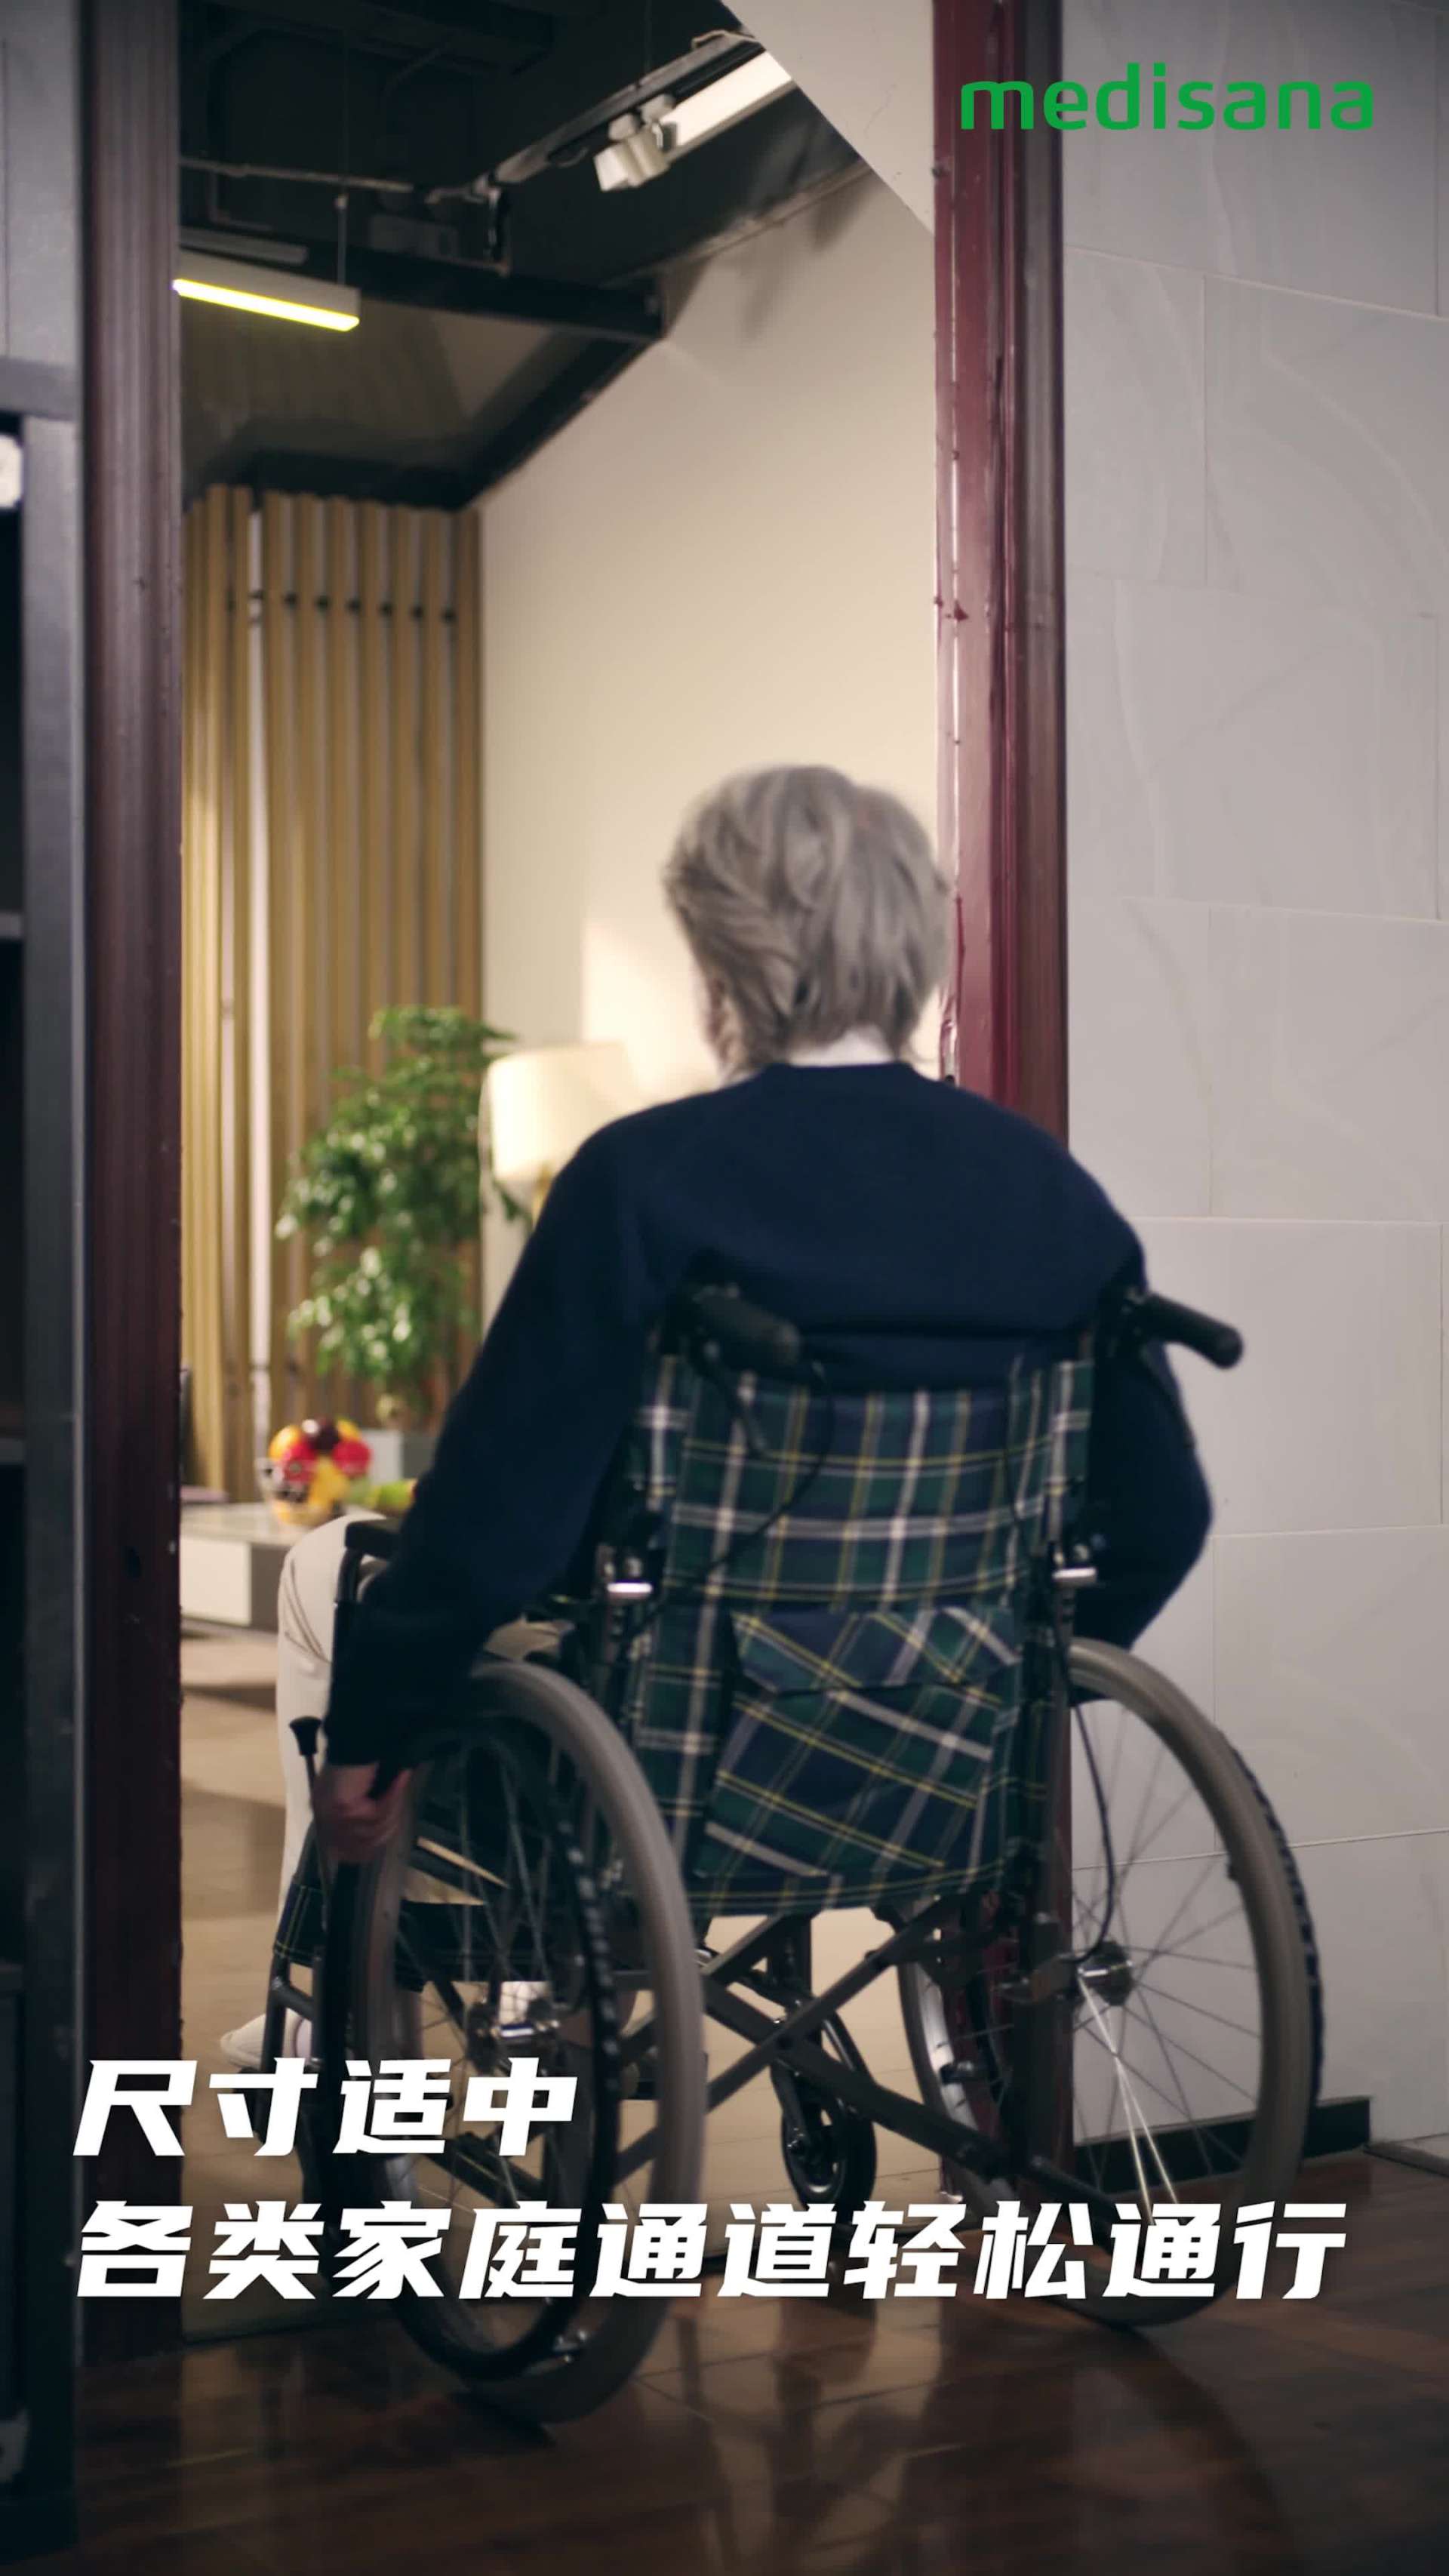 美蝶康轮椅丨产品广告